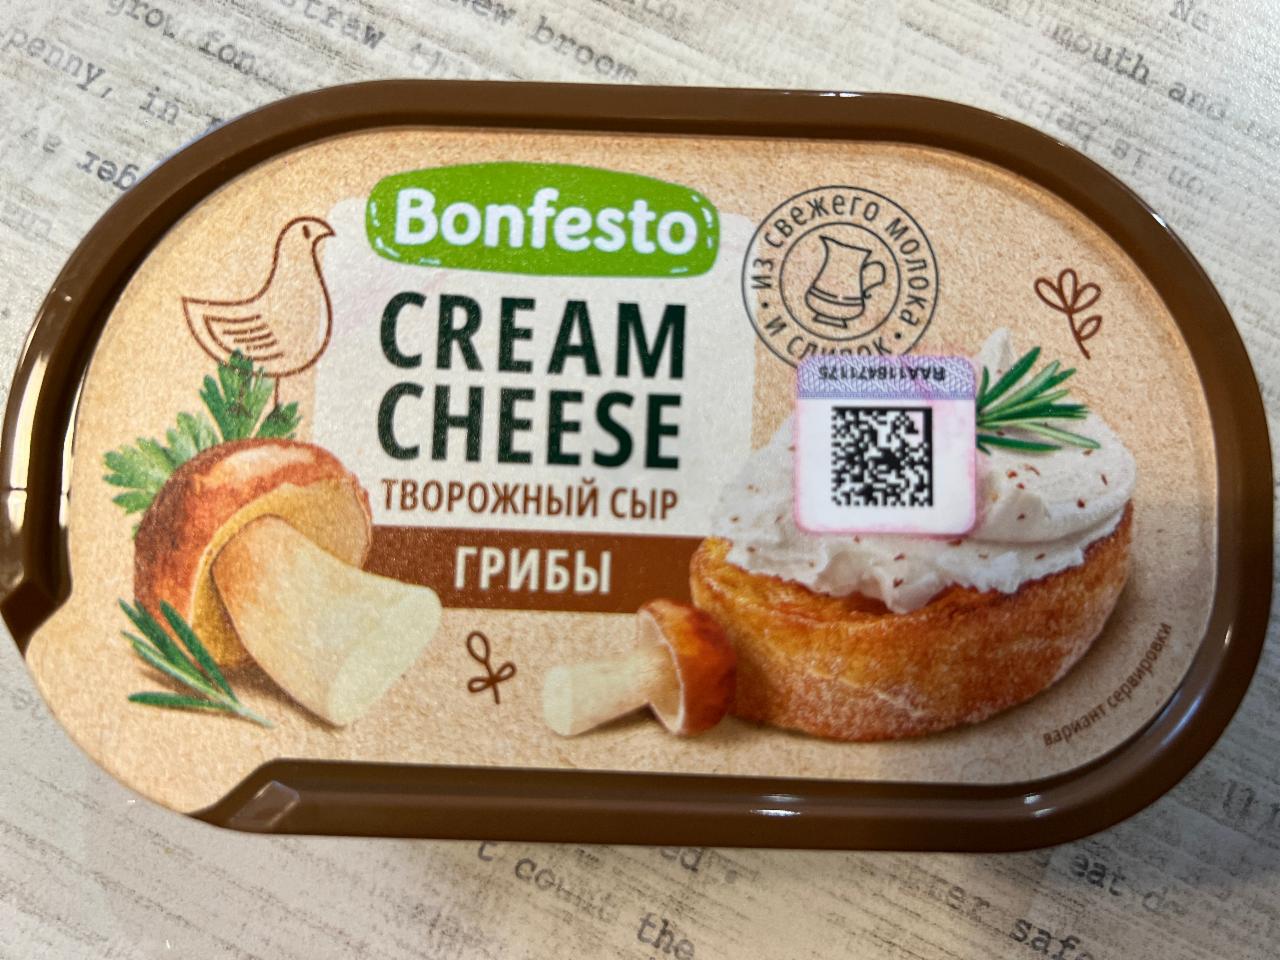 Фото - творожный сыр с грибами Bonfesto